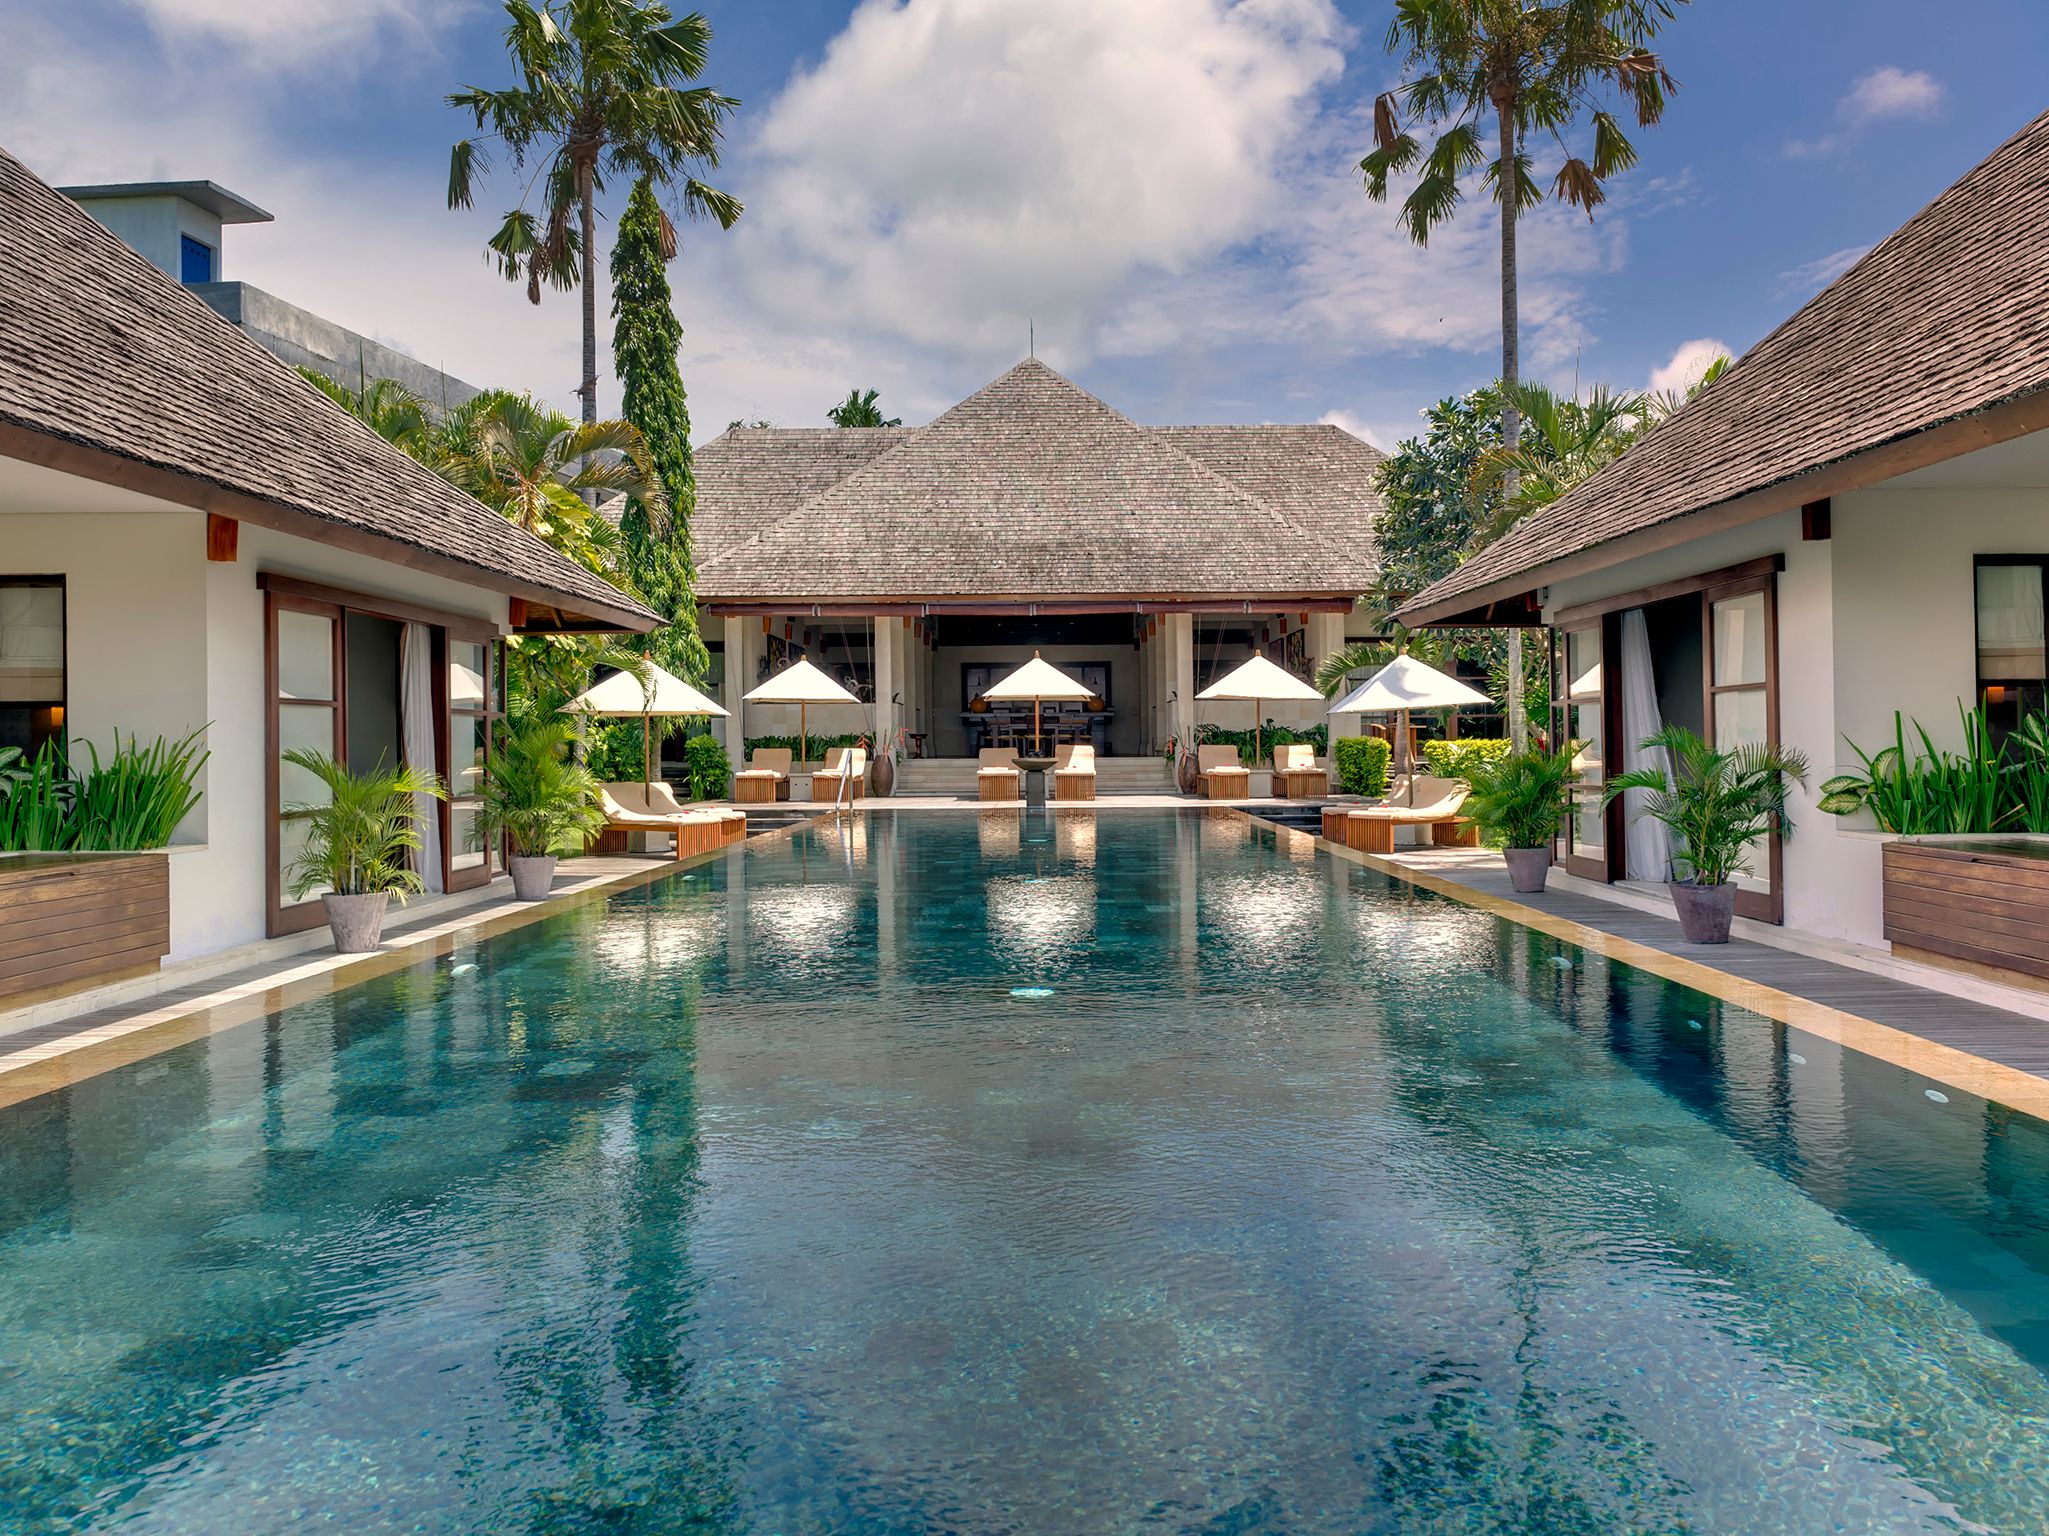 Villa Mandalay - Pool and villa